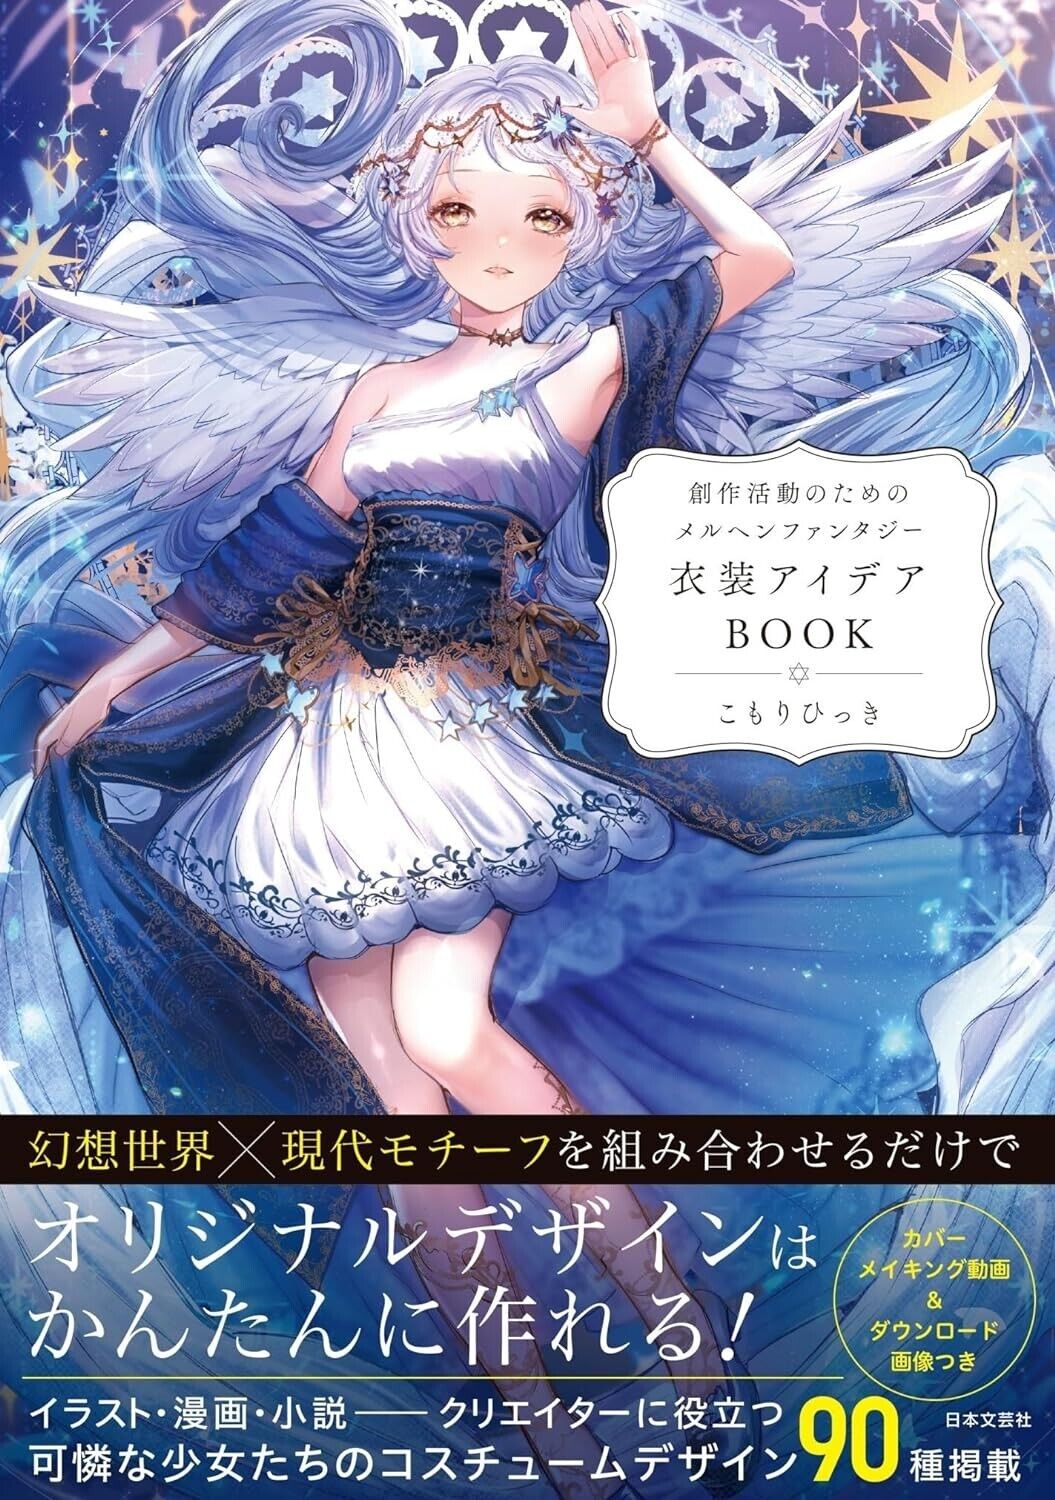 Fairy Tale Fantasy Costume Idea Book | JAPAN How To Draw Manga Illustration